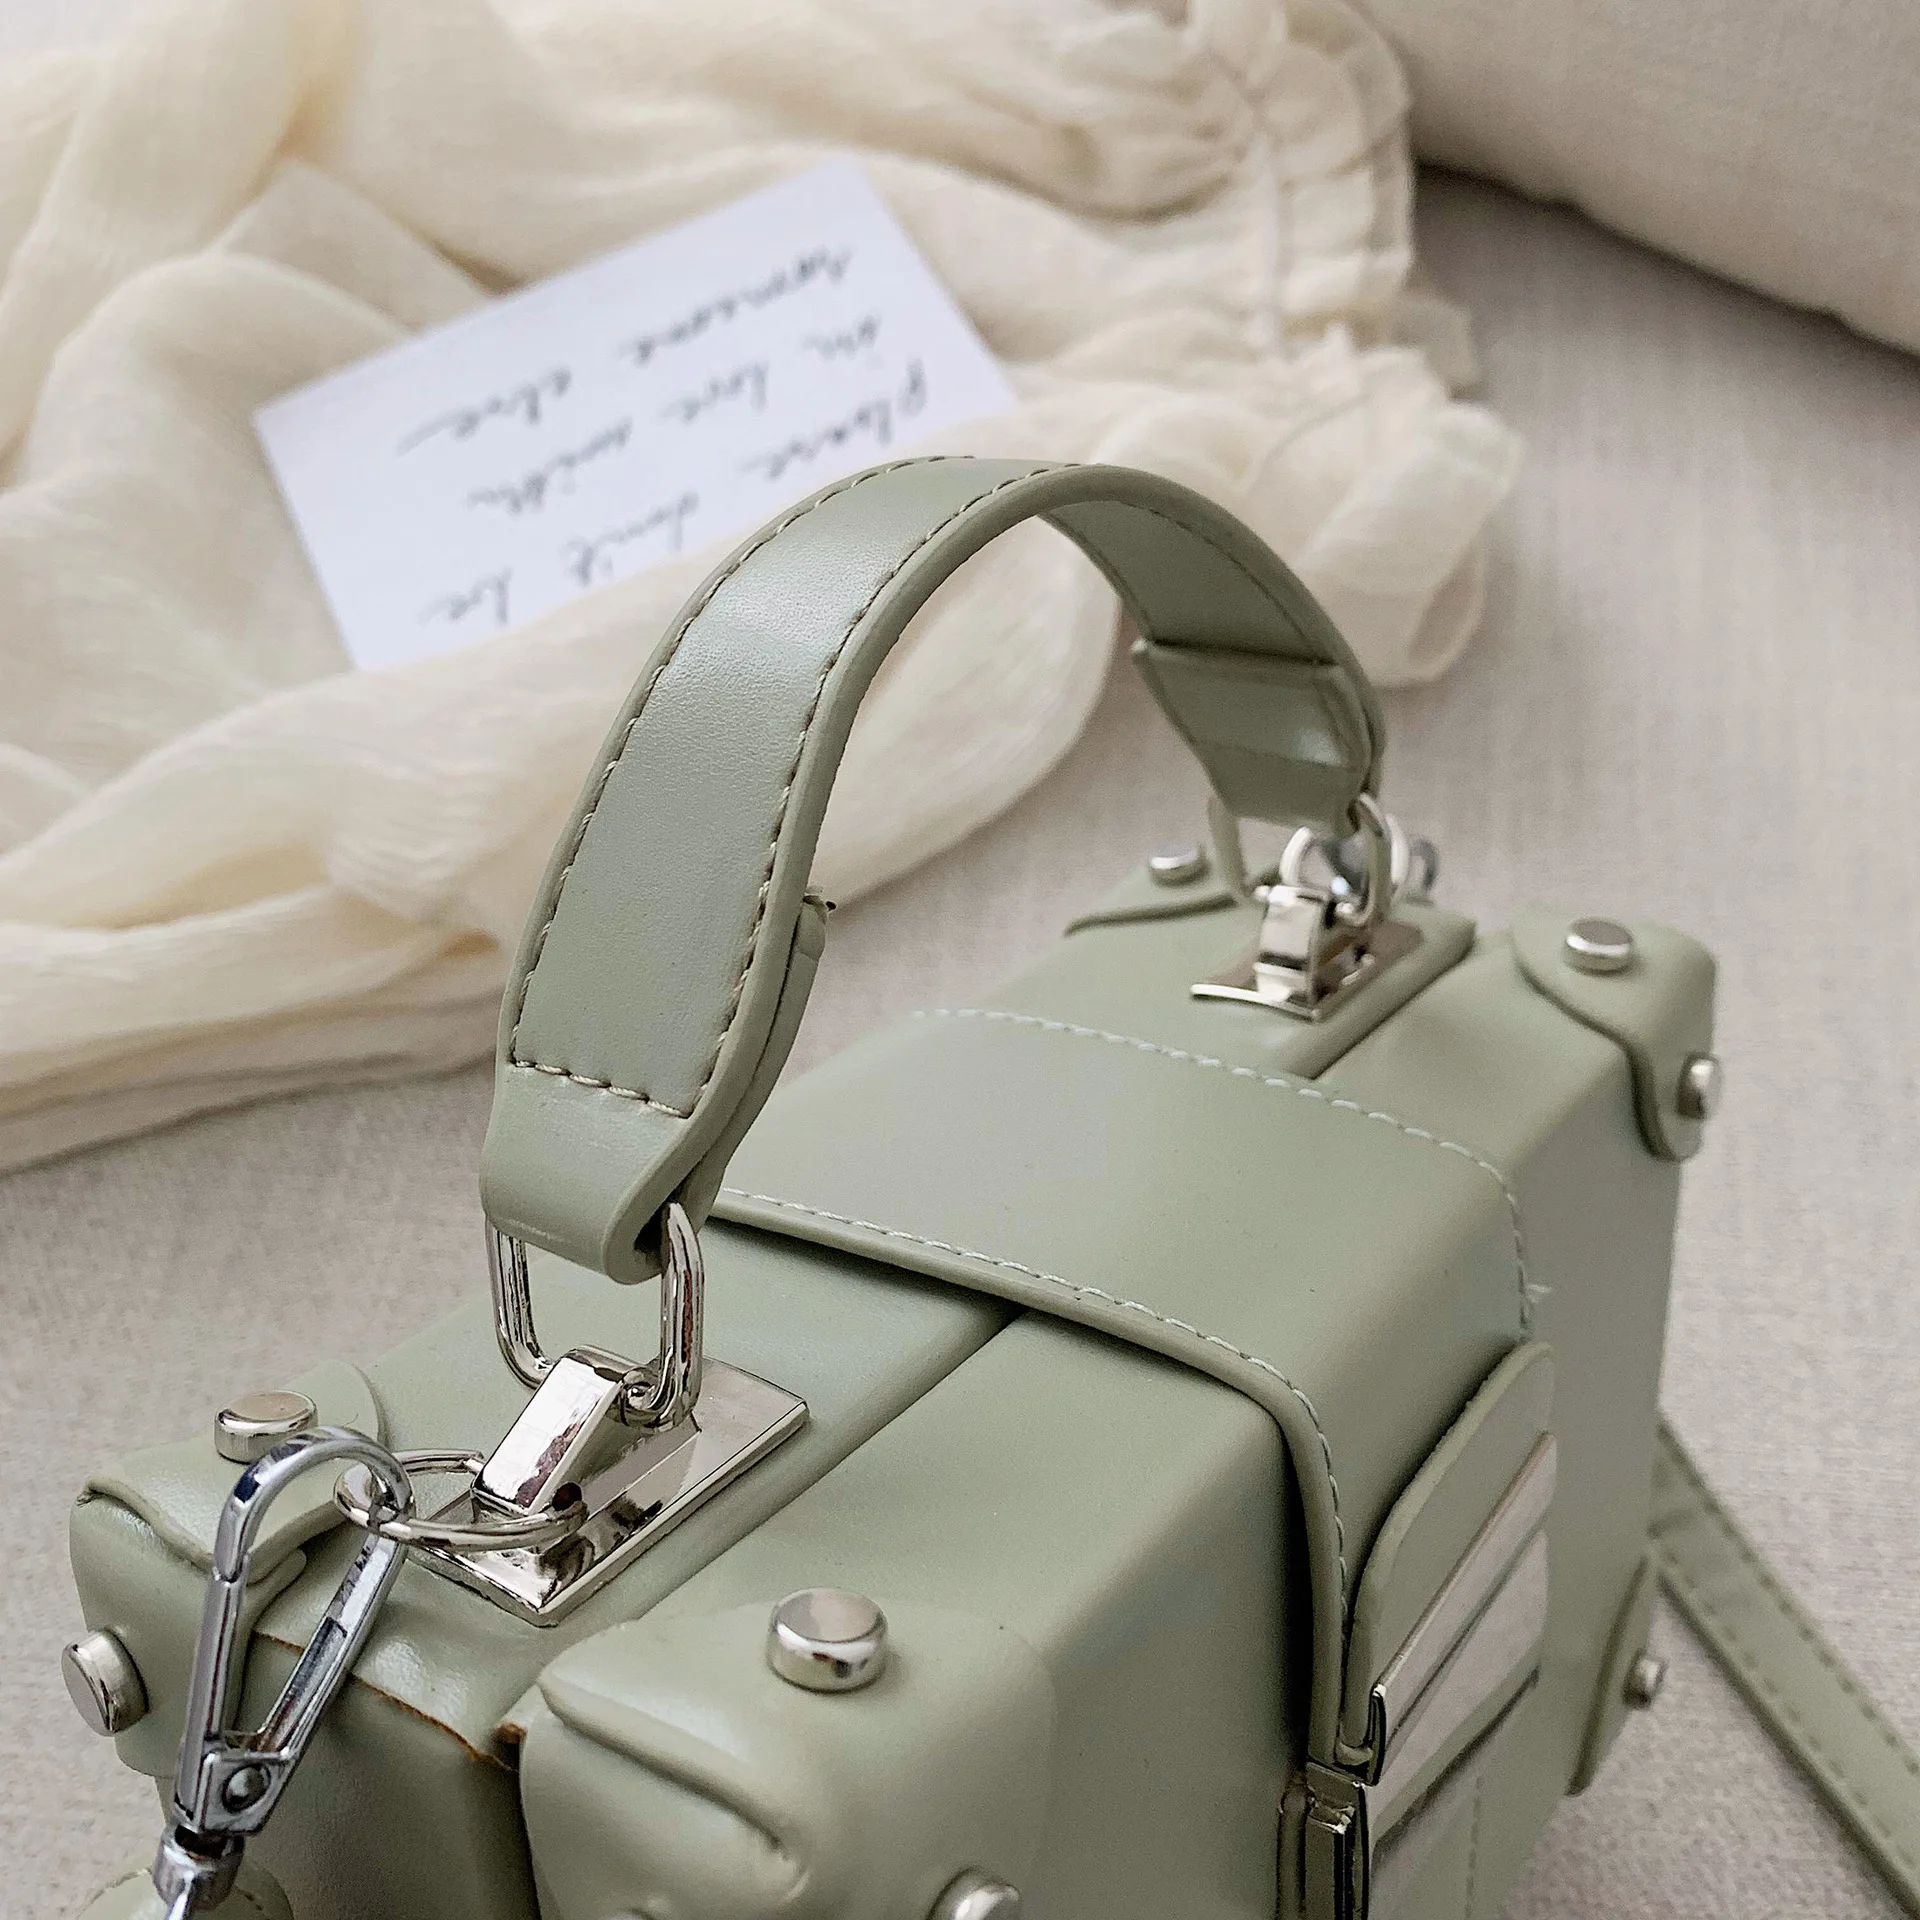 Fashion Ladies Handbags with Custom Printing Trendy Women Square Box Shape  Bag Sh1390 - China Handbags and Lady Handbags price